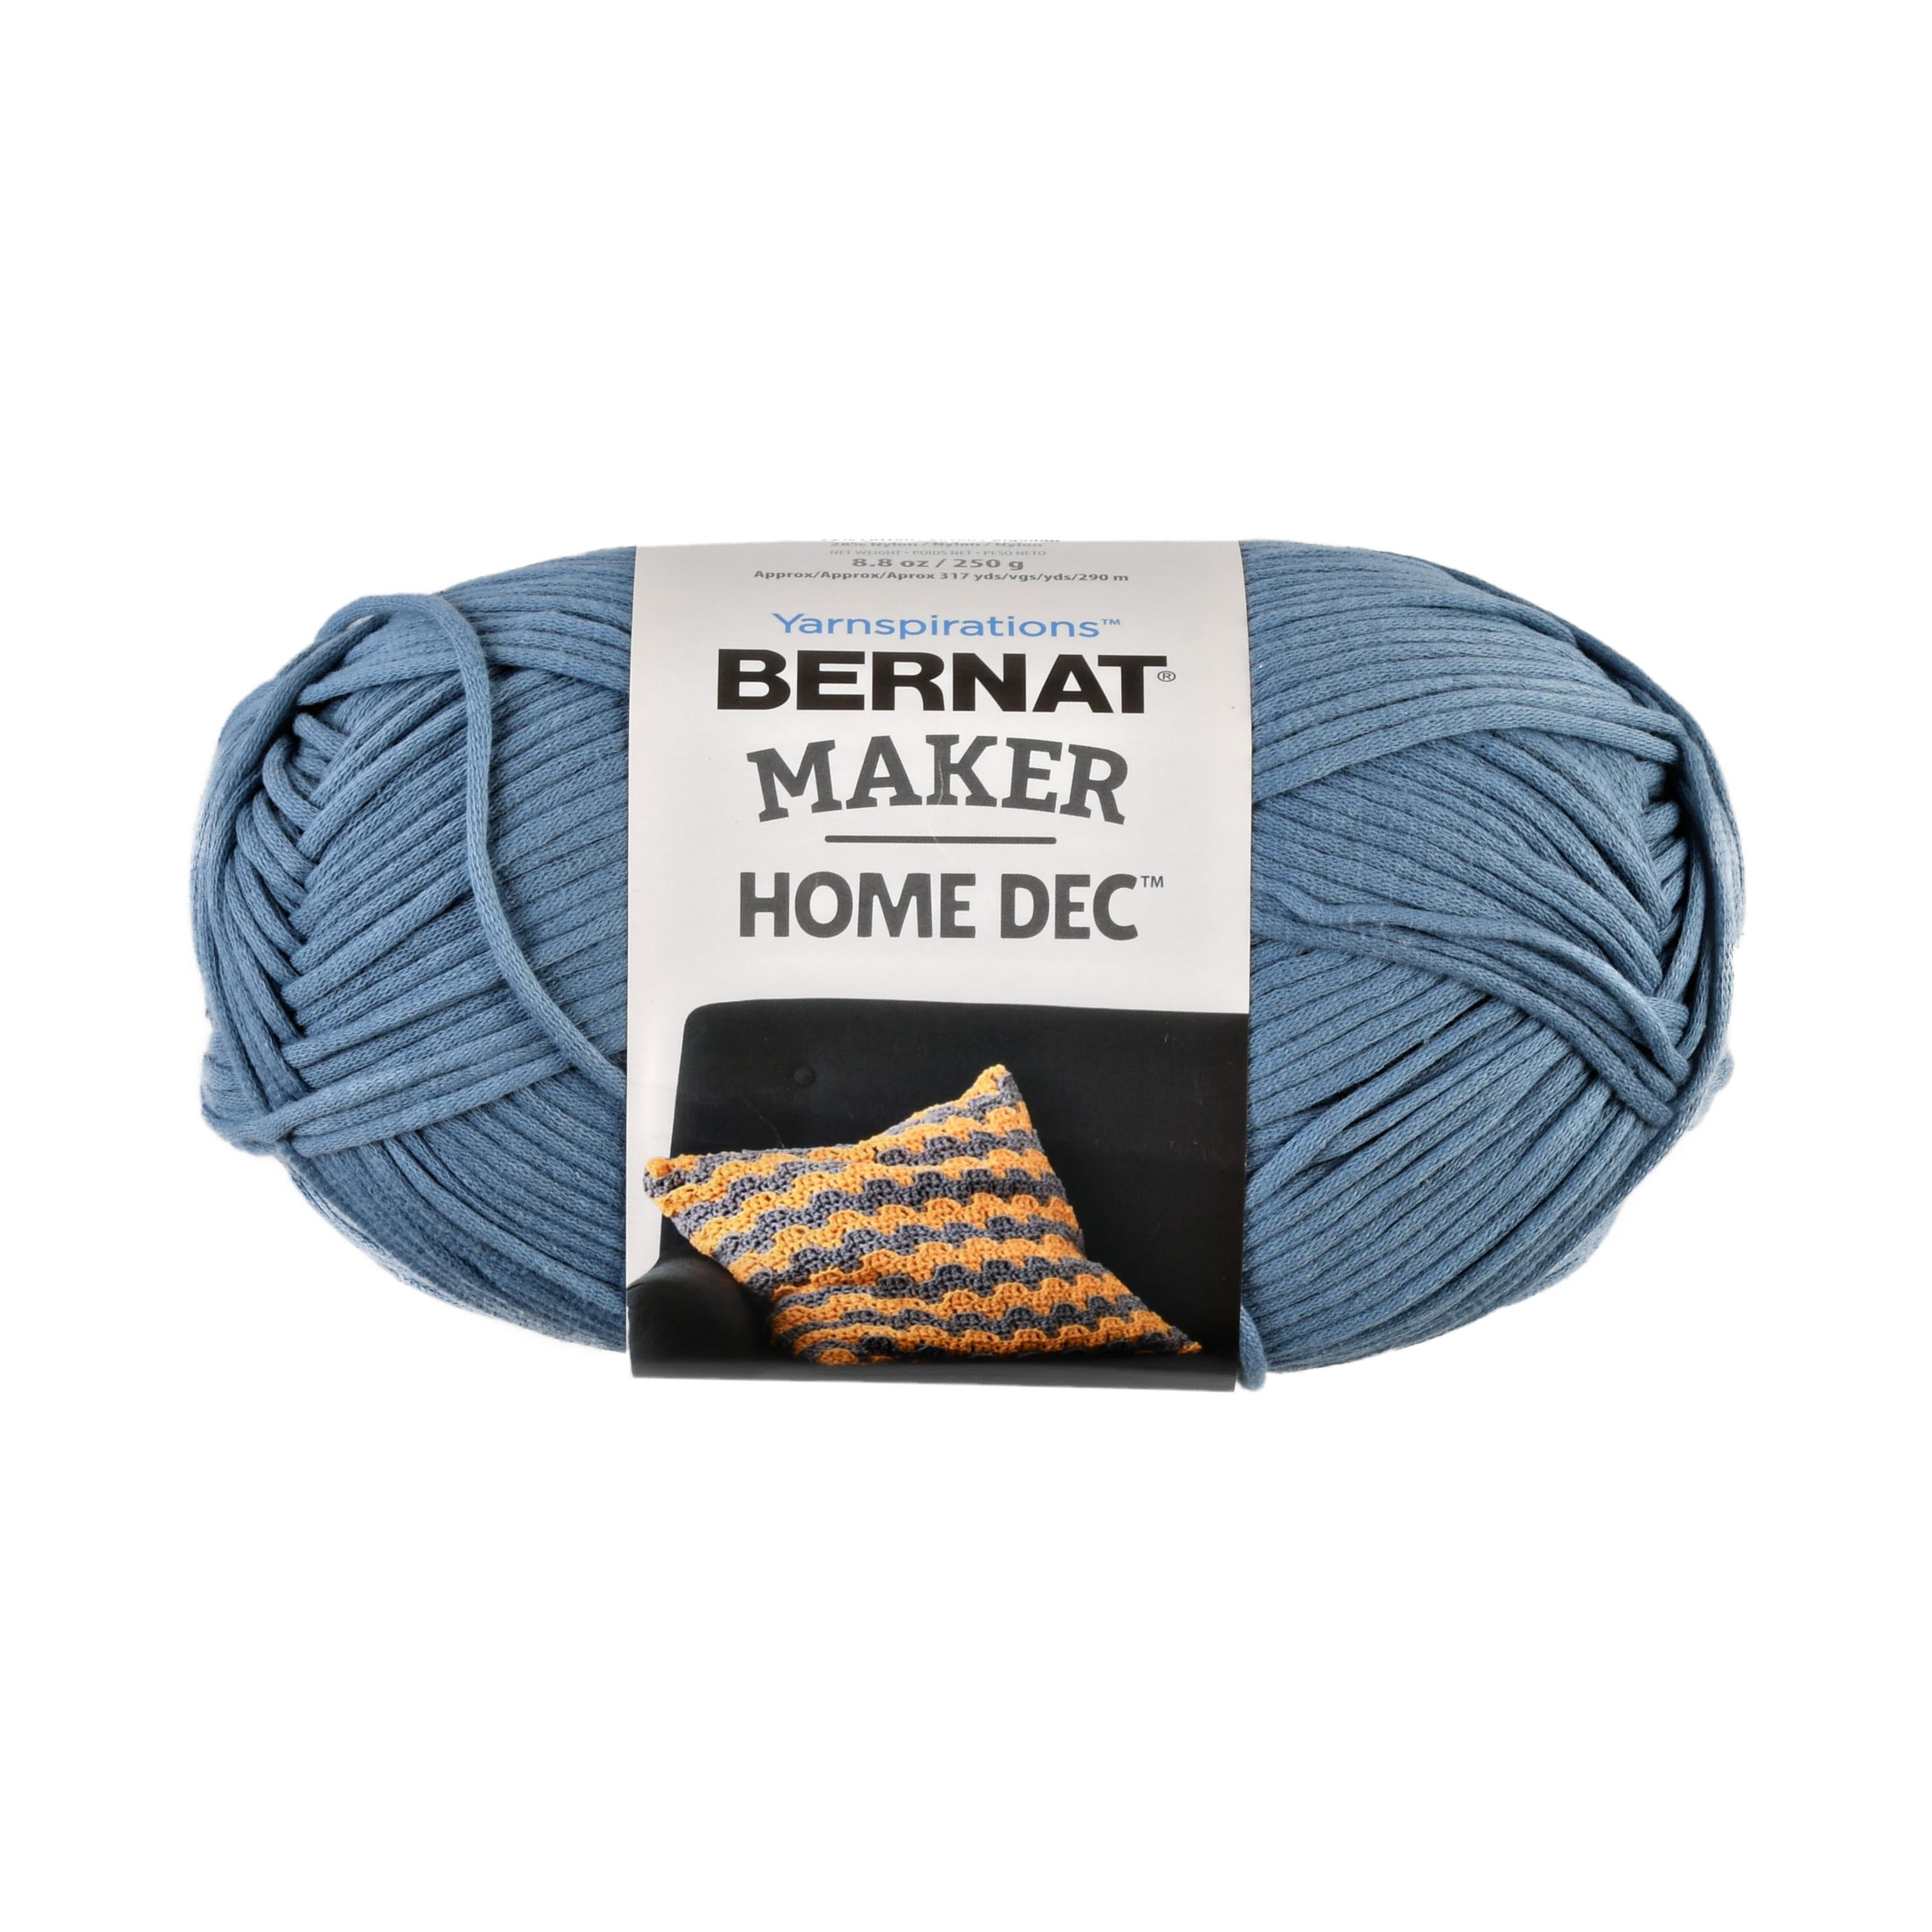 Bernat Maker Home Dec Black Yarn - 2 Pack of Easy to Use Yarn for Beginners – Cotton & Nylon Blend – Gauge #5 Bulky Yarn for Knitting, Crocheting